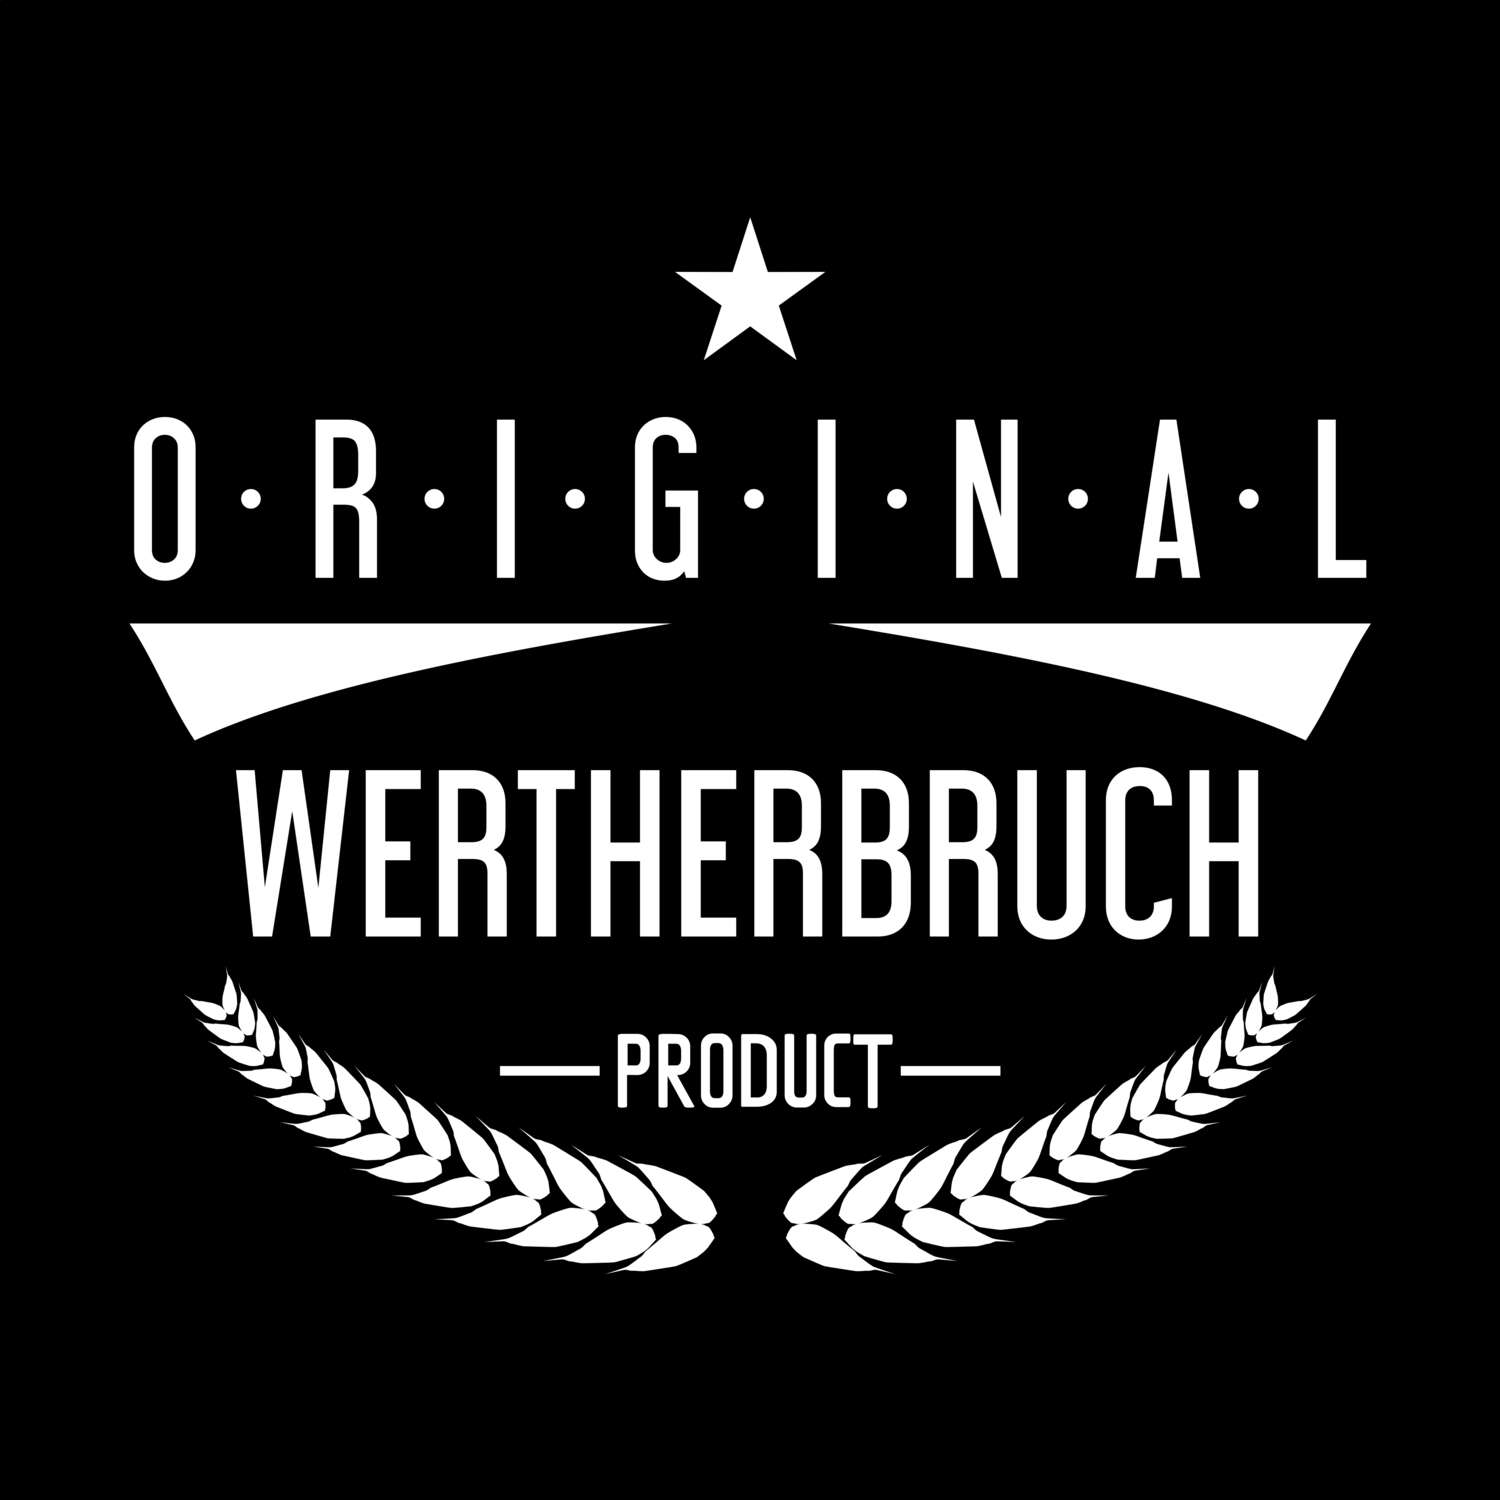 Wertherbruch T-Shirt »Original Product«